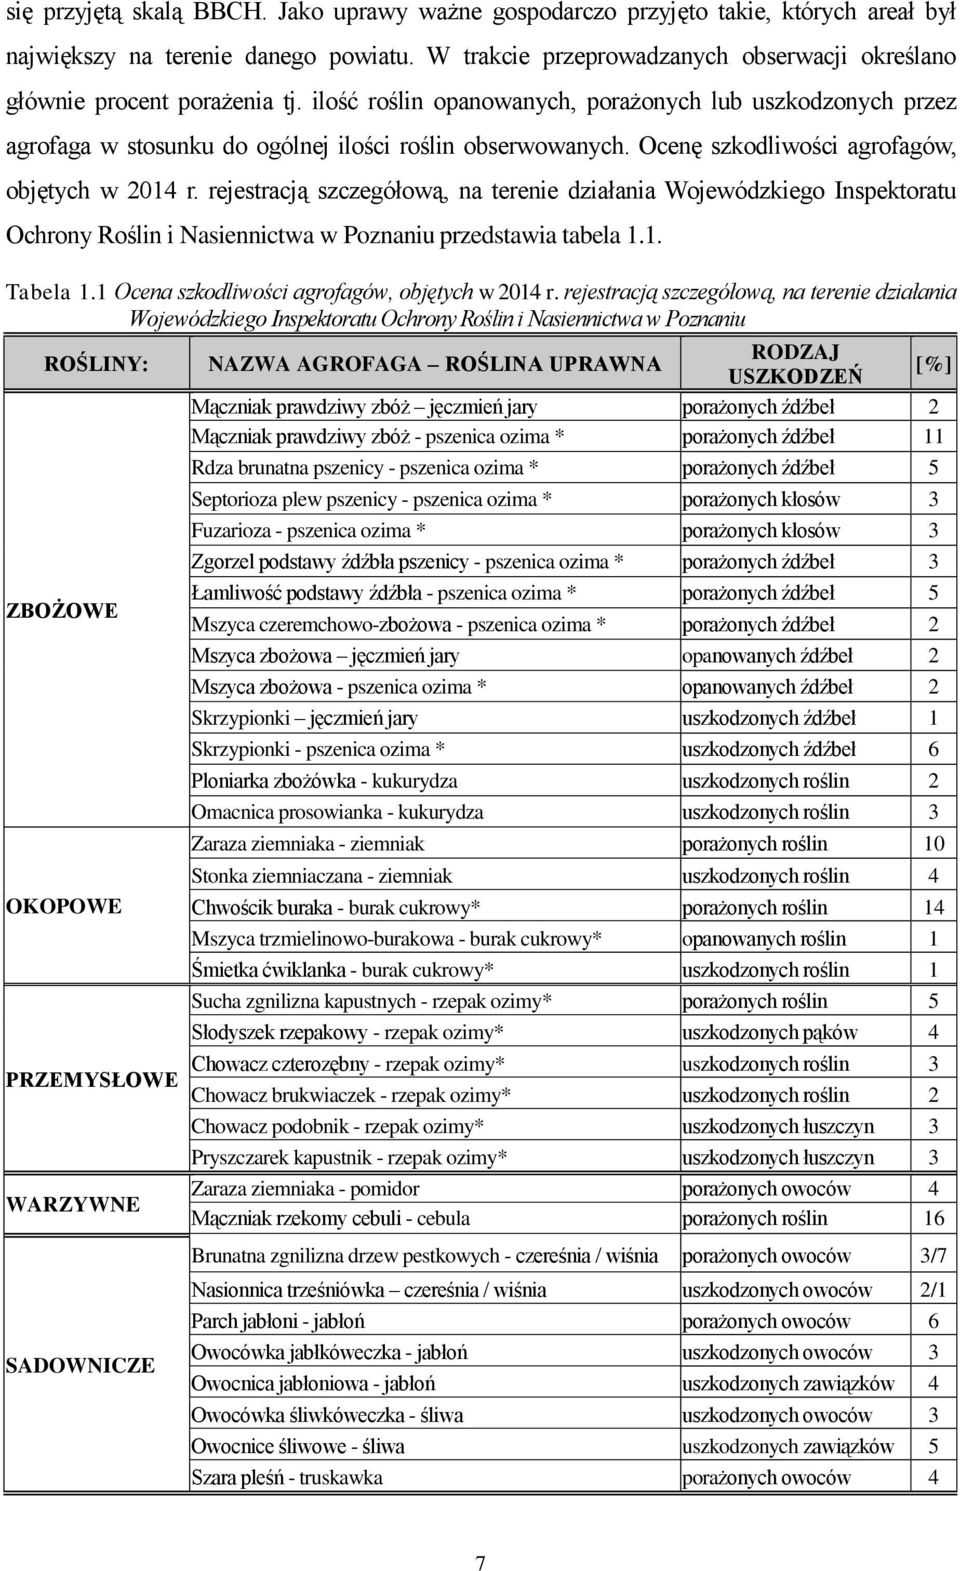 Ocenę szkodliwości agrofagów, objętych w 2014 r. rejestracją szczegółową, na terenie działania Wojewódzkiego Inspektoratu Ochrony Roślin i Nasiennictwa w Poznaniu przedstawia tabela 1.1. Tabela 1.